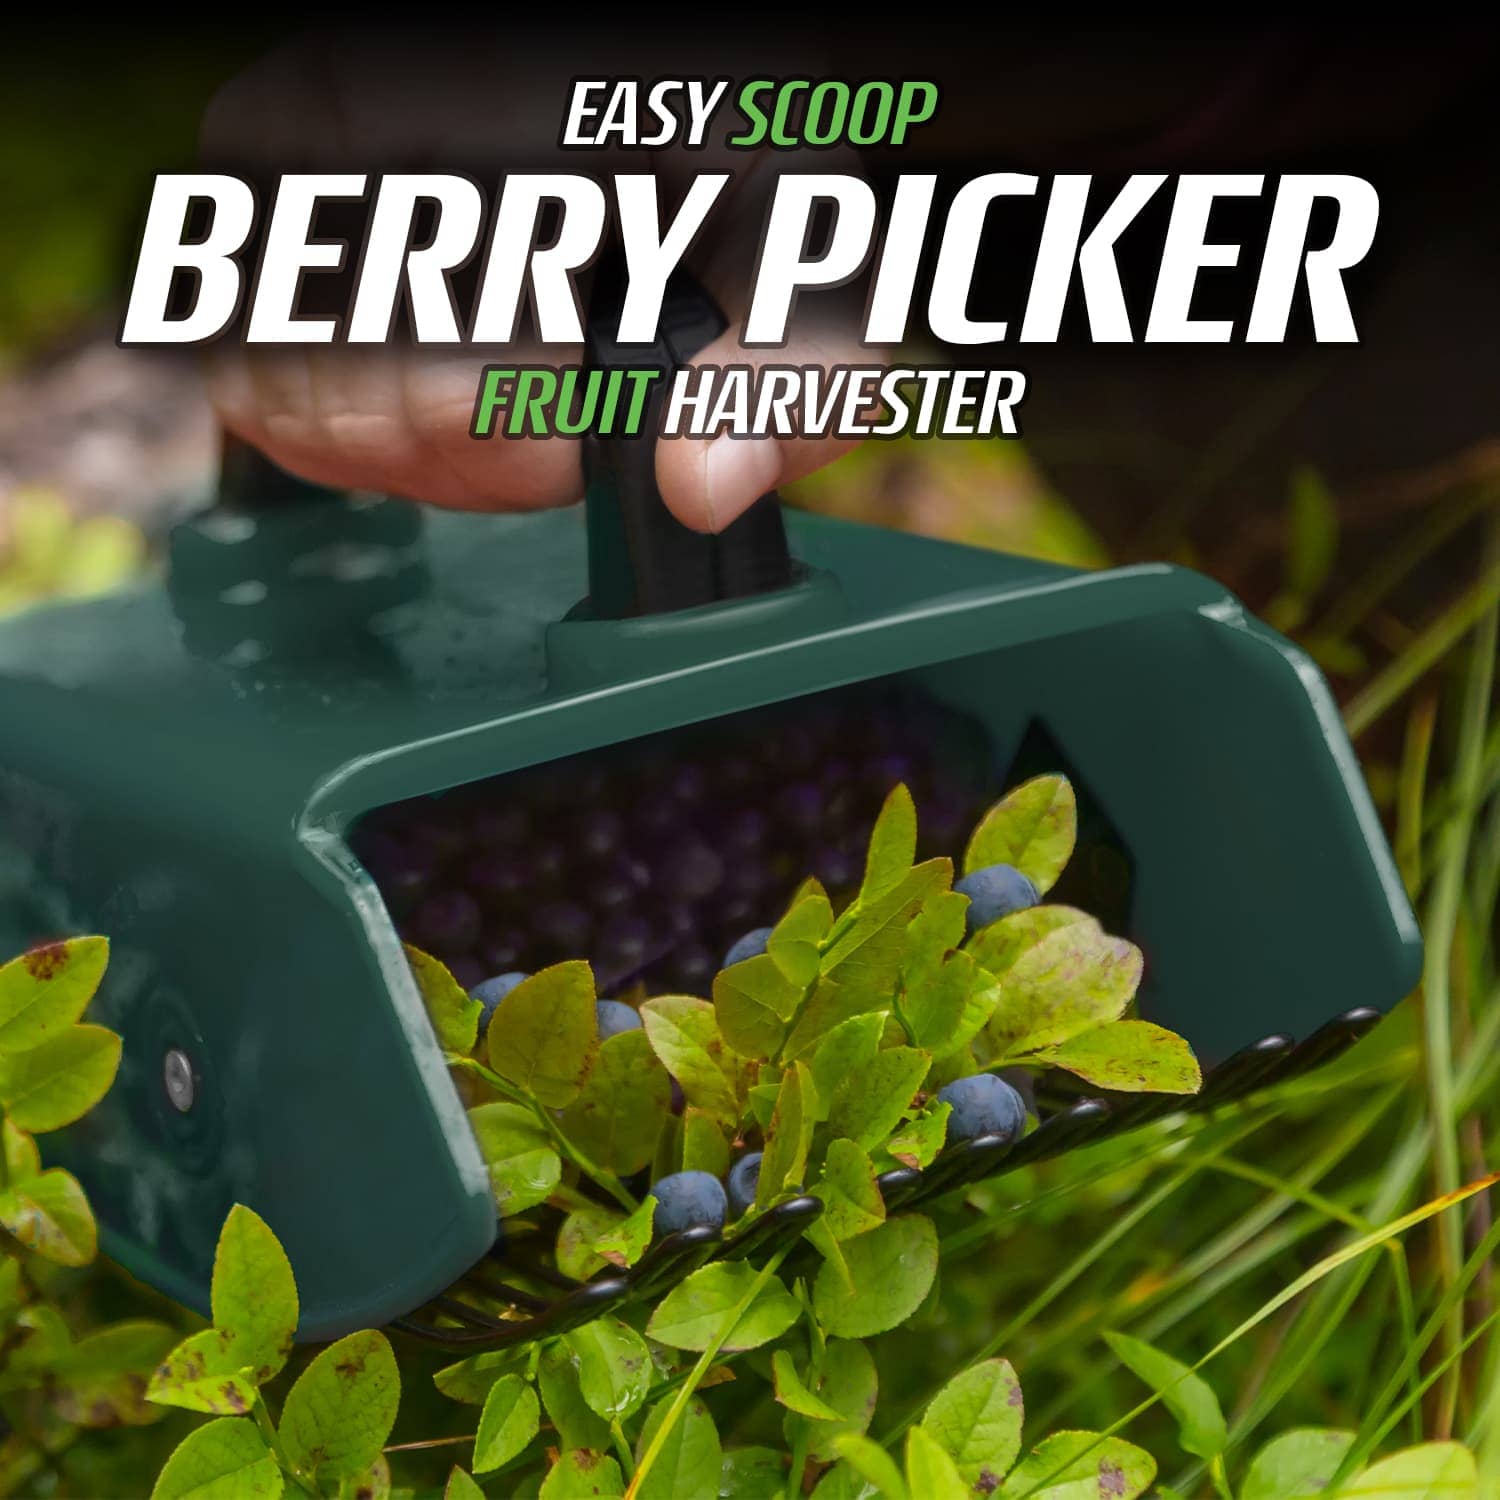 Handheld Easy Scoop Berry Picker Fruit Harvester by CKB Ltd